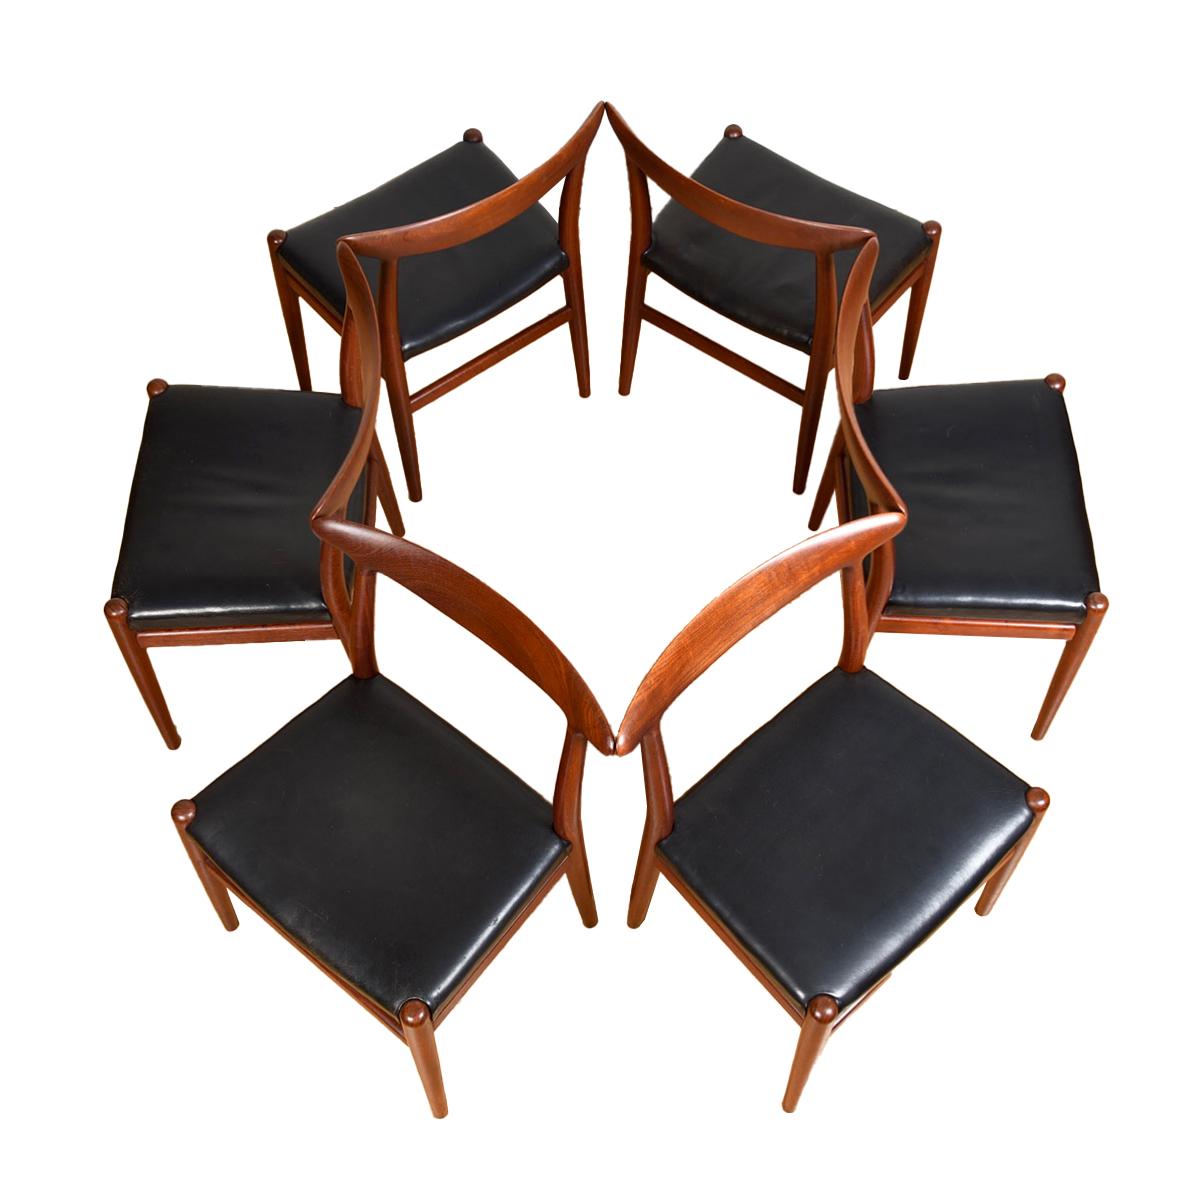 Massive Rückenlehnen aus Teakholz prägen diese Stühle, die sich in einem ausgezeichneten Vintage-Zustand befinden.
Original schwarzes Leder, das genau richtig eingefahren ist, um perfekt mit der tiefdunklen Patina des Teakholzes zu